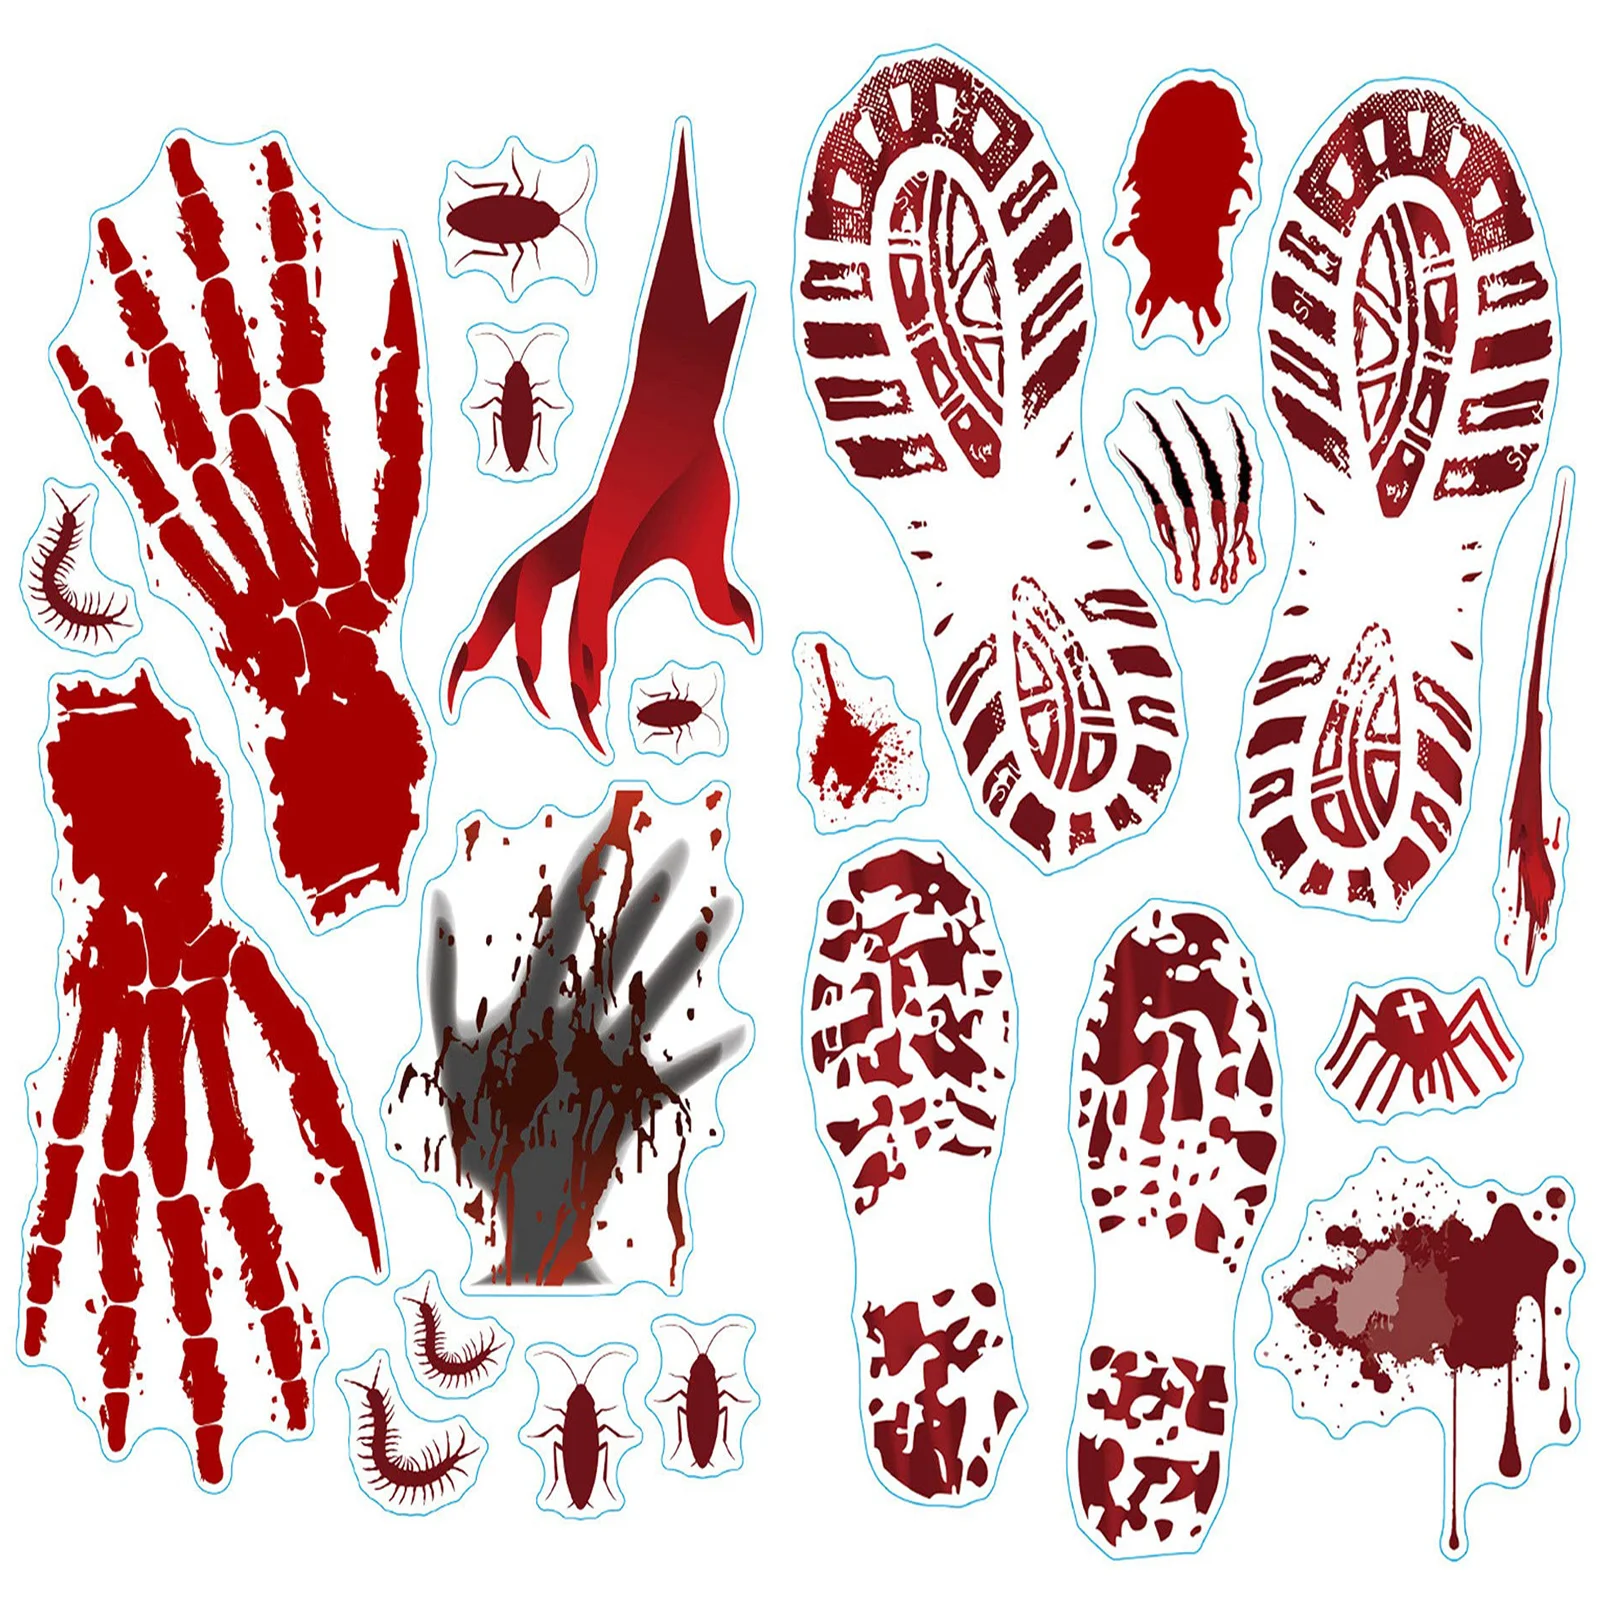 4 Листа Кровавого отпечатка руки, украшения для Хэллоуина, Наклейка на стену, Страшные наклейки на окна для Хэллоуина, Домашний Декор